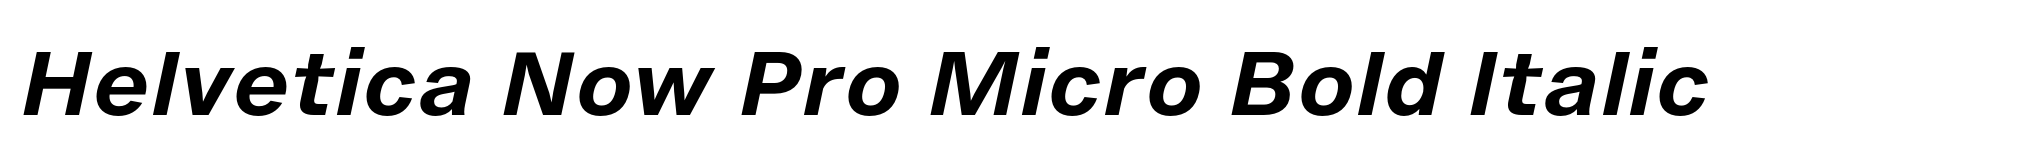 Helvetica Now Pro Micro Bold Italic image